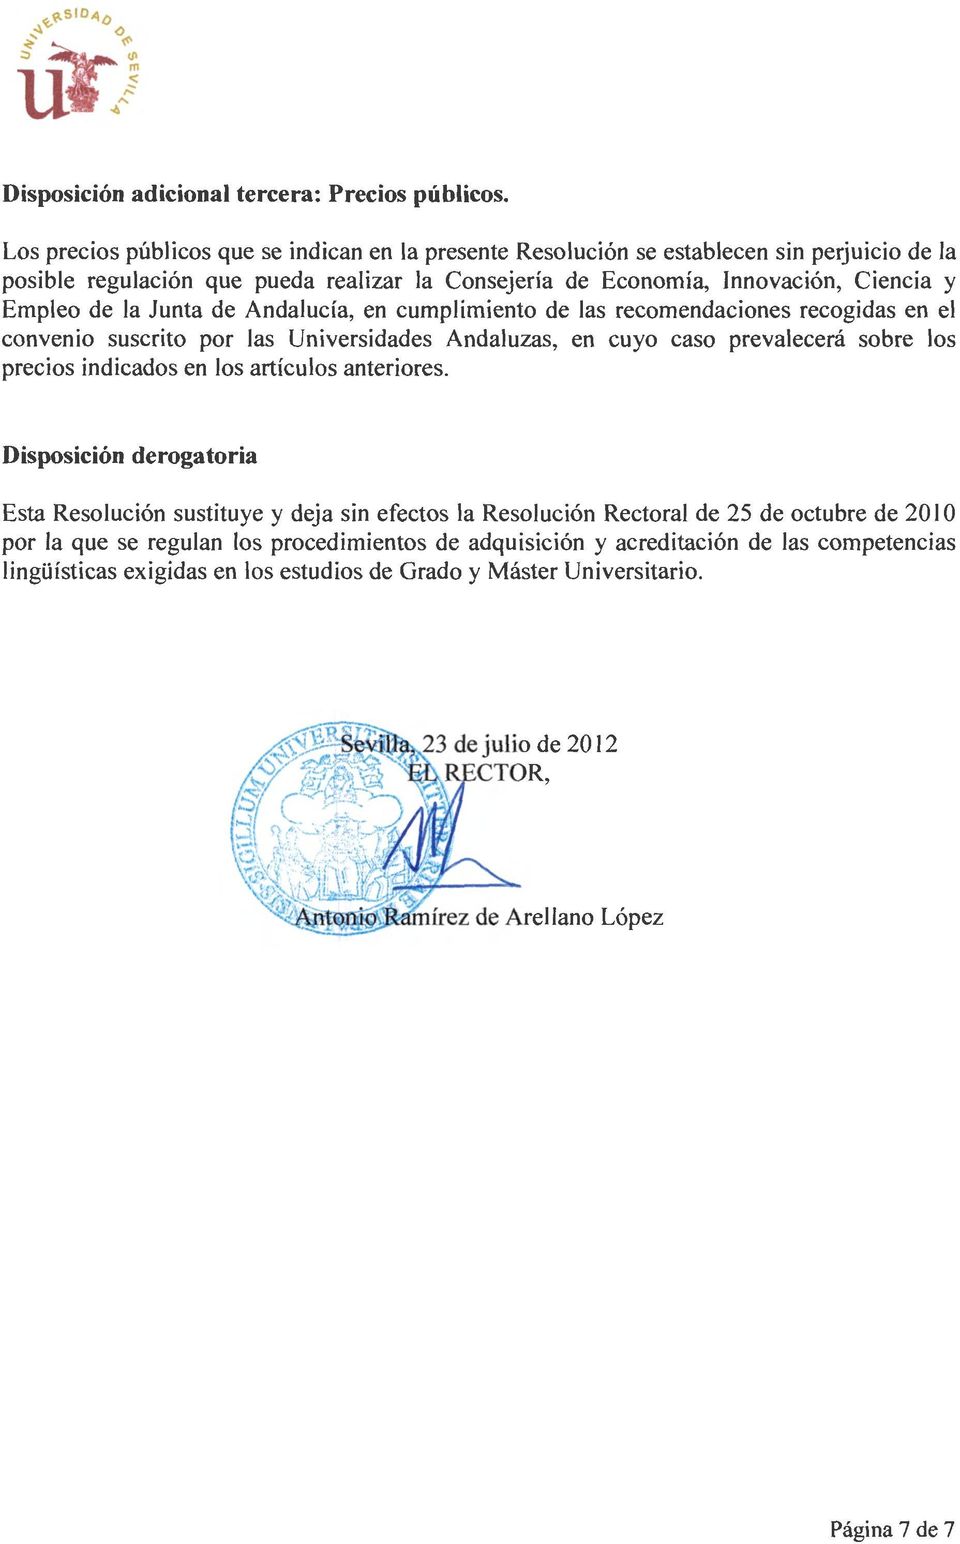 Empleo de la Junta de Andalucía, en cumplimiento de las recomendaciones recogidas en el convenio suscrito por las Universidades Andaluzas, en cuyo caso prevalecerá sobre los precios